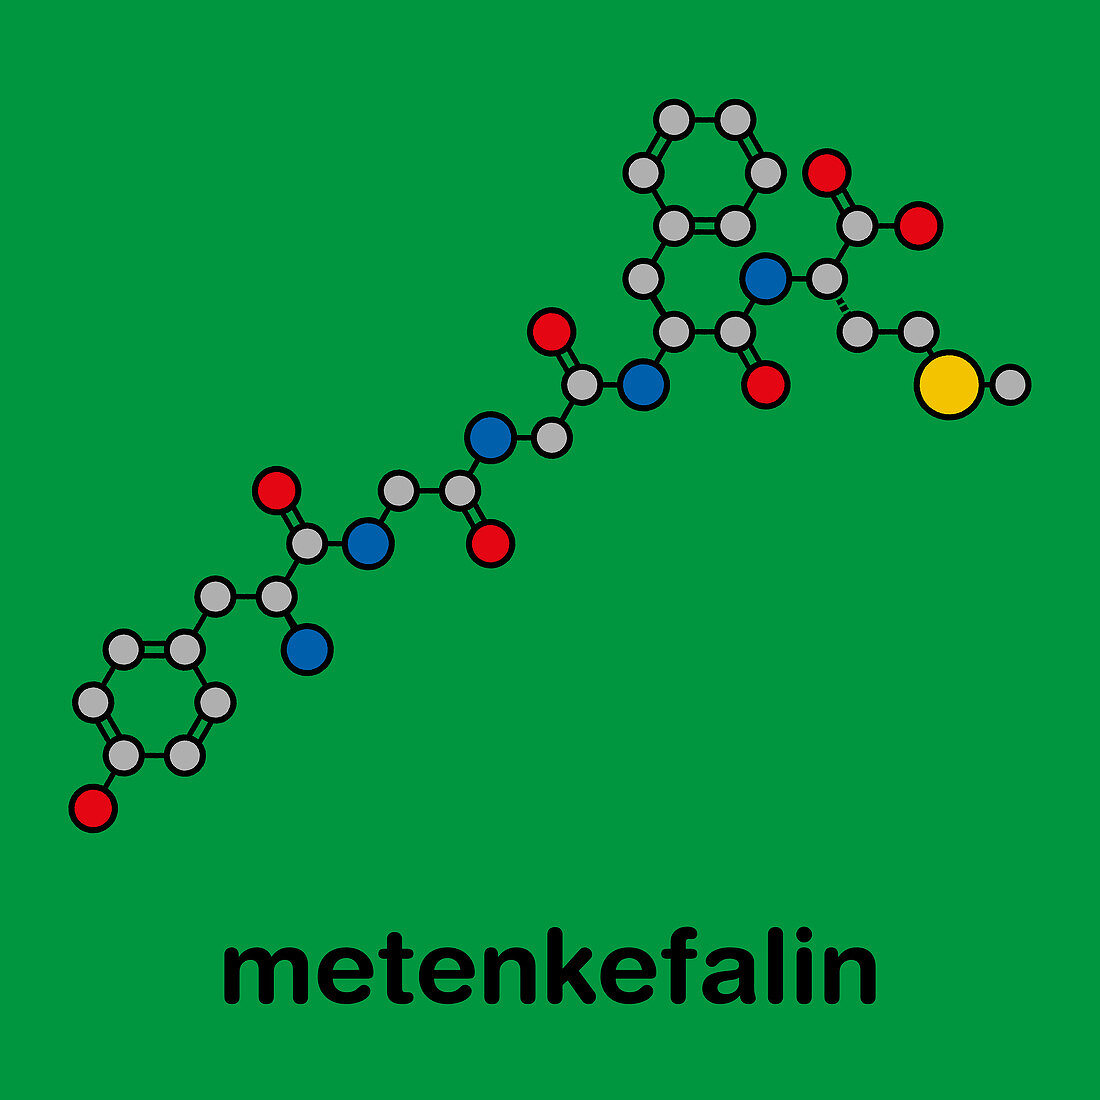 Met-enkephalin endogenous opioid peptide molecule